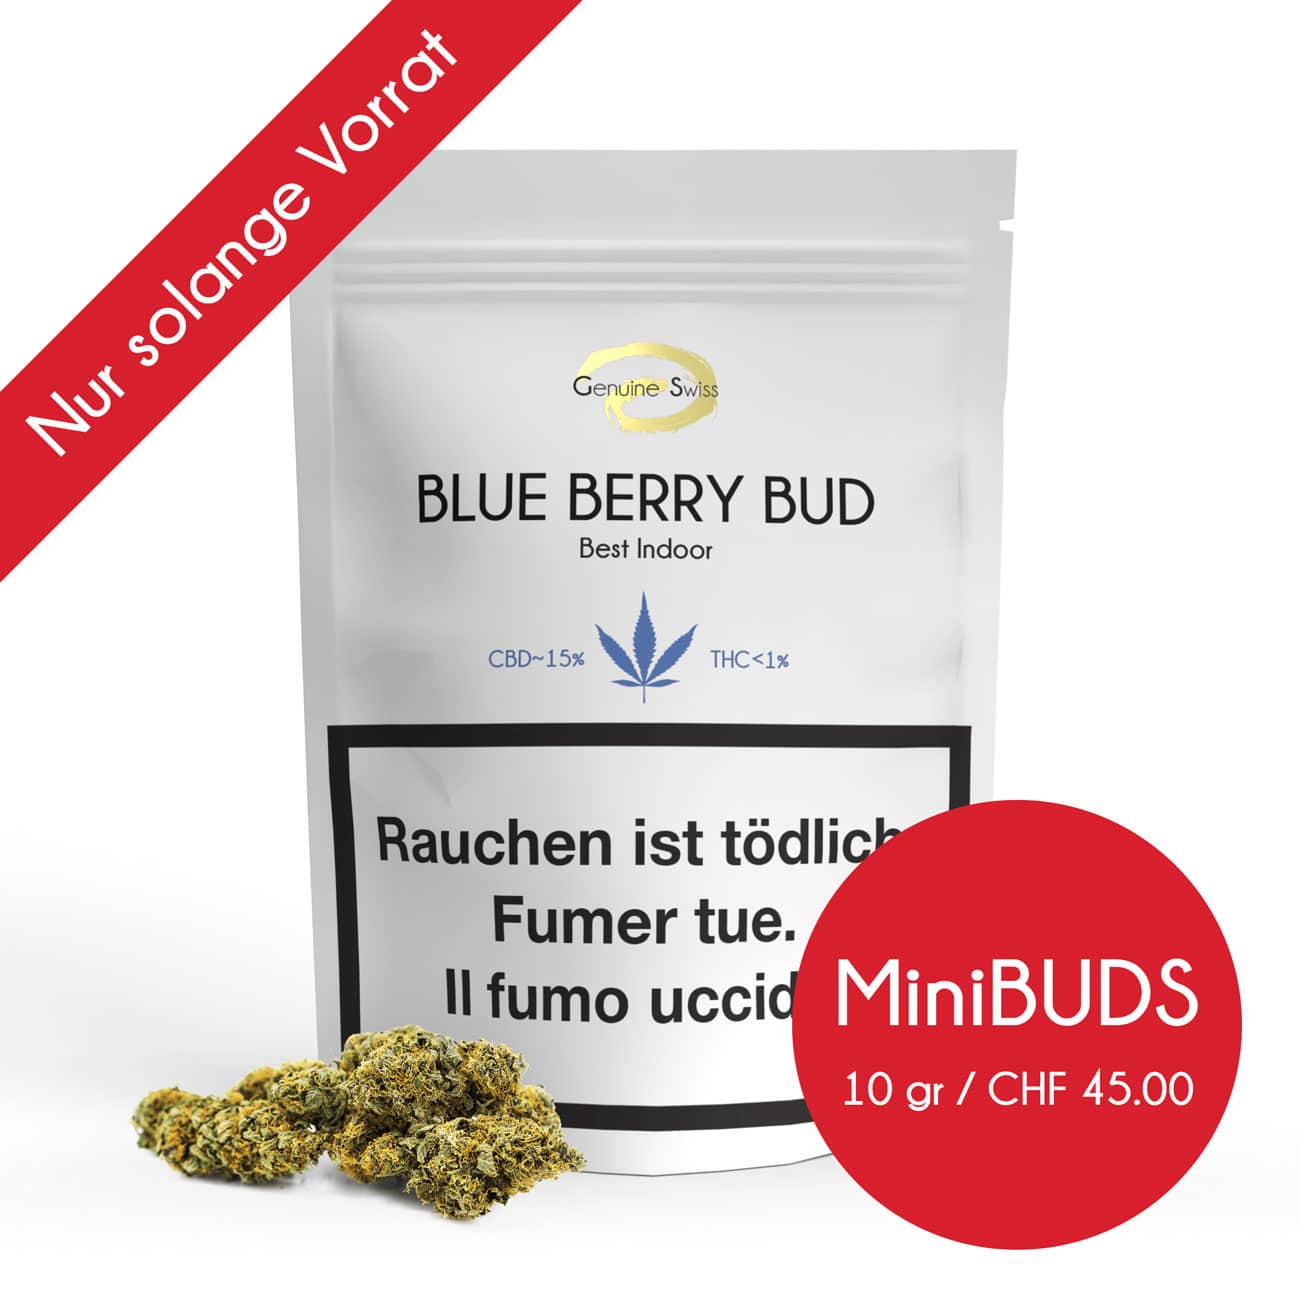 Genuine Swiss Blue Berry Minibuds, Small Buds